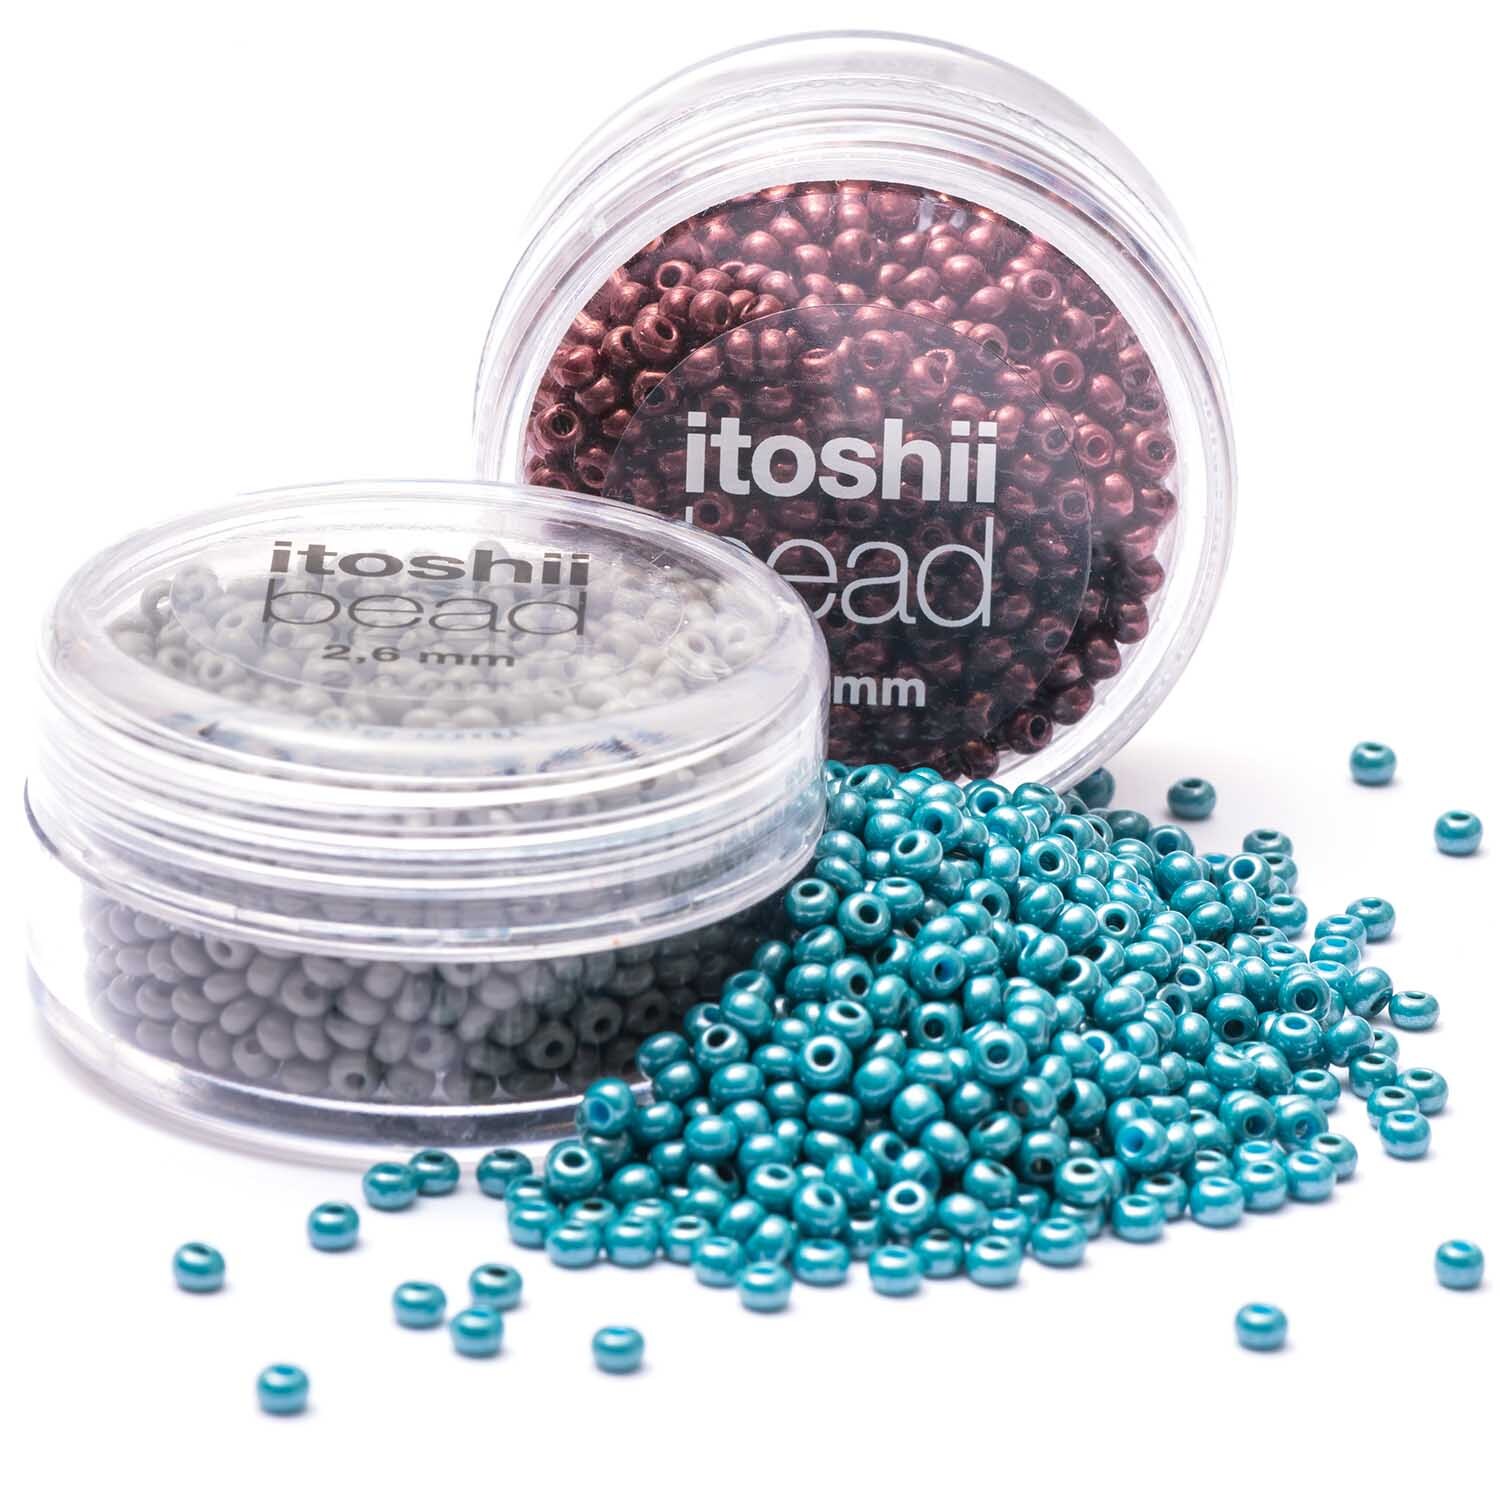 itoshii beads Perlen 2,6mm 17g